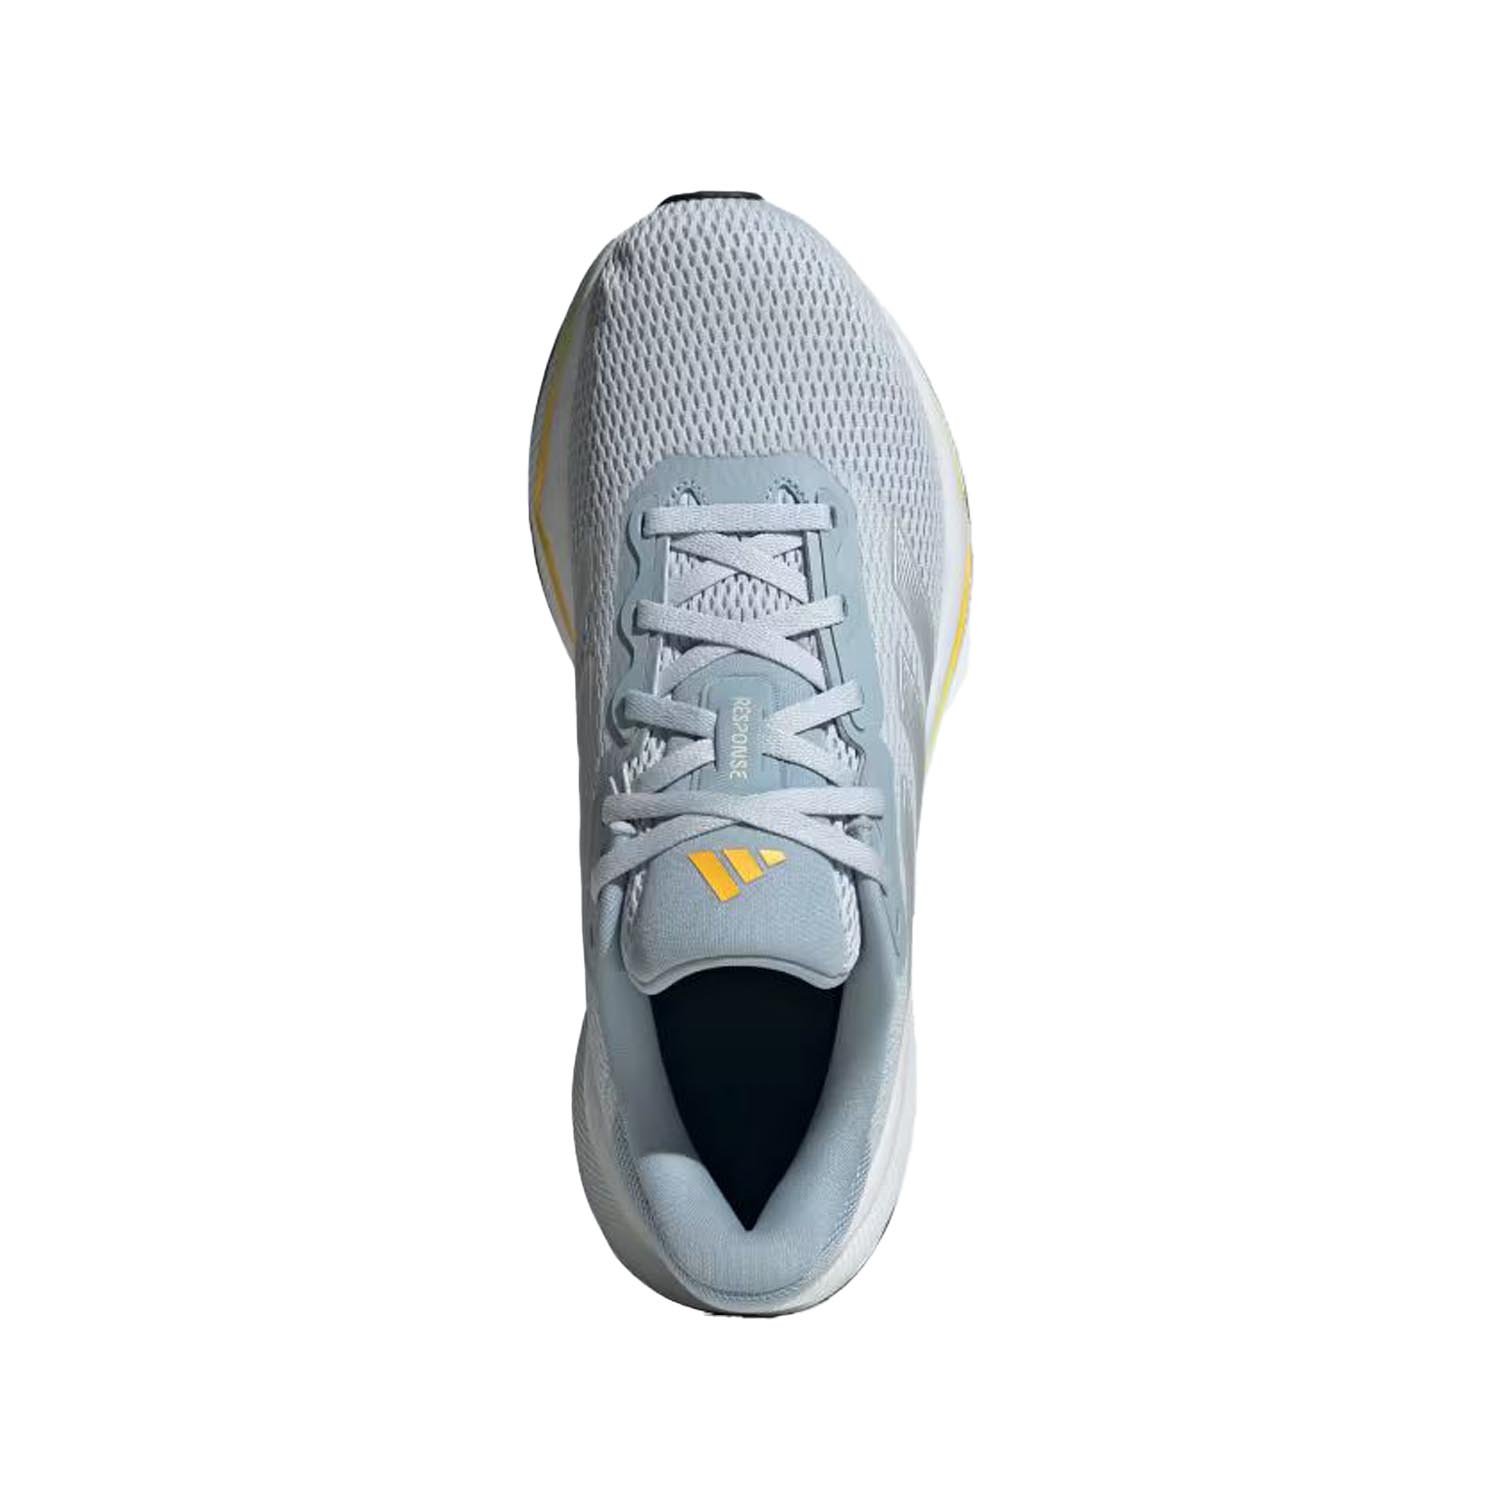 Adidas Response Kadın Koşu Ayakkabısı - Mavi - 1